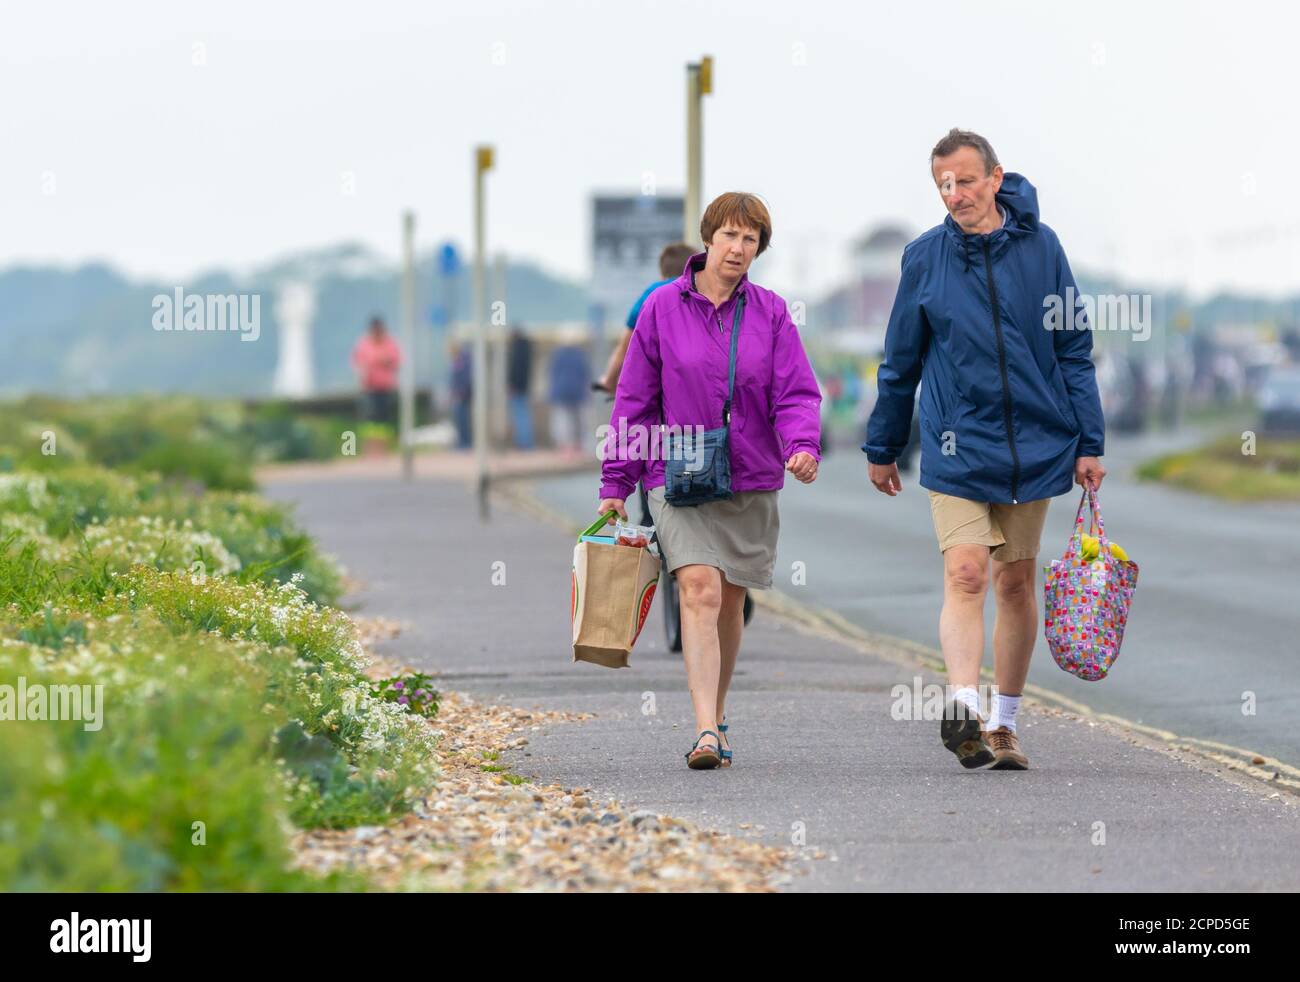 Coppia maschile e femminile di media età che cammina su un marciapiede indossando cappotti in una giornata fredda, portando pesanti borse per la spesa, nel Regno Unito. Foto Stock